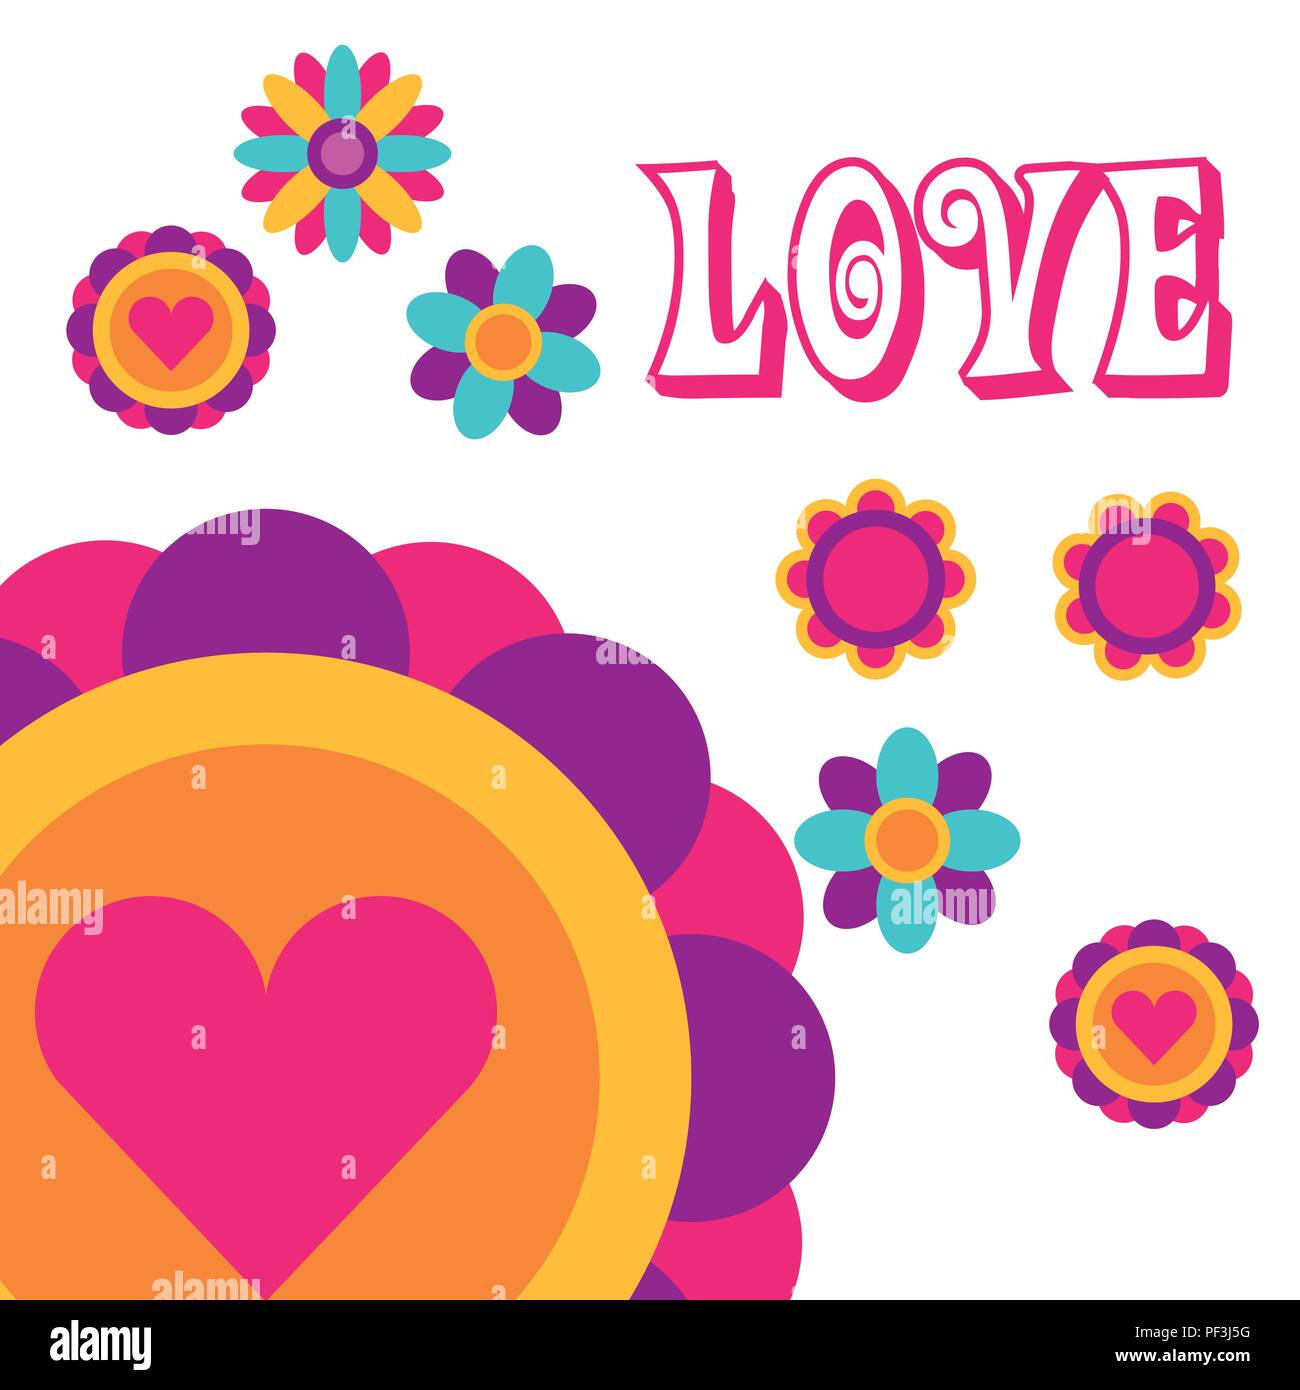 Liebe Blumen Liebe Herz Bohmischen Hippie Free Spirit Stock Vektorgrafik Alamy